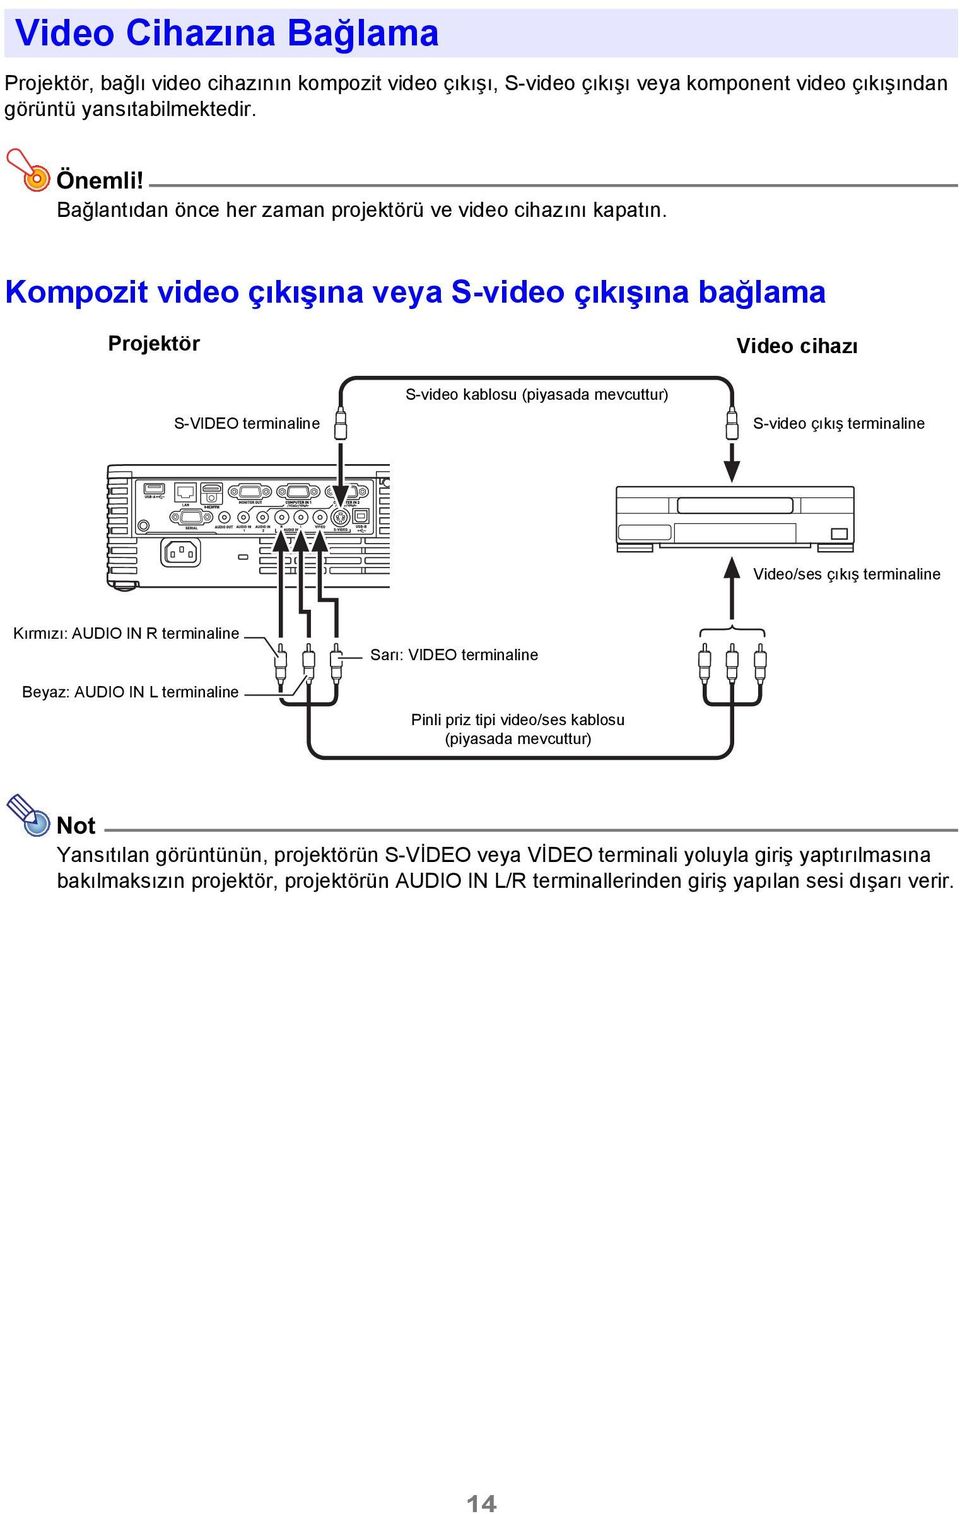 Kompozit video çıkışına veya S-video çıkışına bağlama Projektör Video cihazı S-VIDEO terminaline S-video kablosu (piyasada mevcuttur) S-video çıkış terminaline Video/ses çıkış terminaline